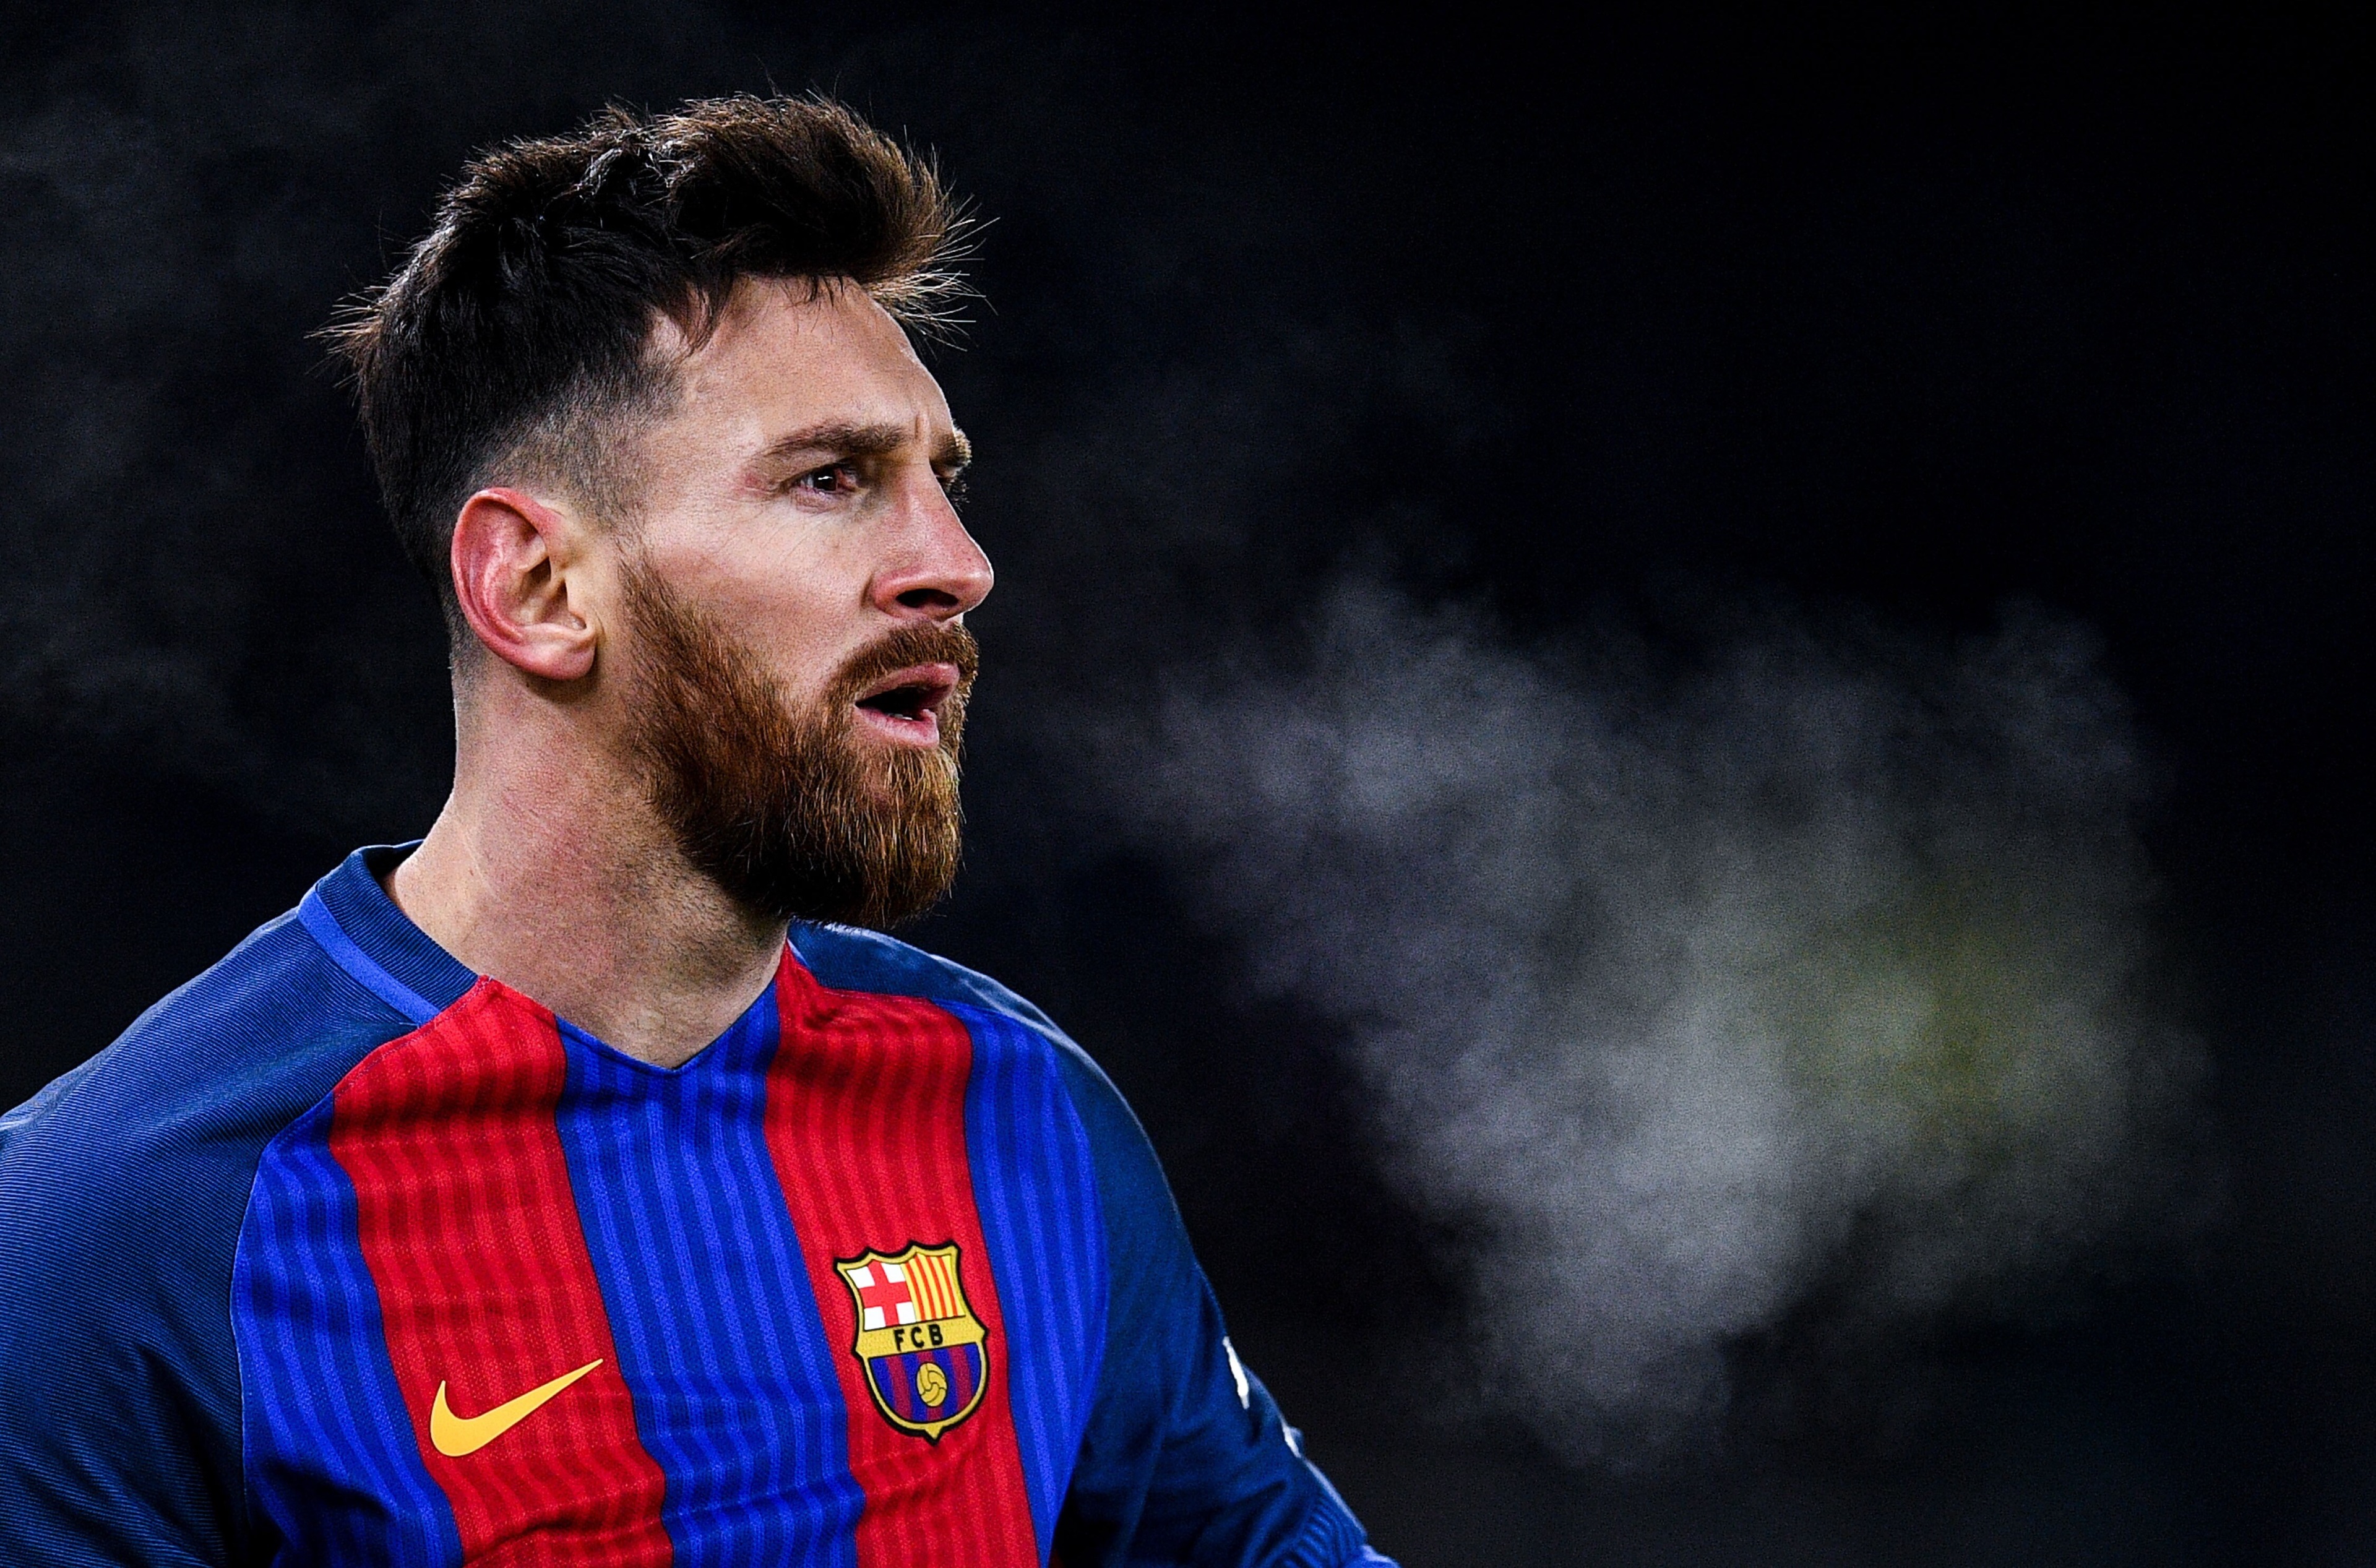 Tận hưởng khoảnh khắc đẹp nhất của Lionel Messi với ảnh 4K. Tất cả những điều bạn mong muốn ở một hình ảnh đẹp trọn vẹn đều có trong ảnh này.